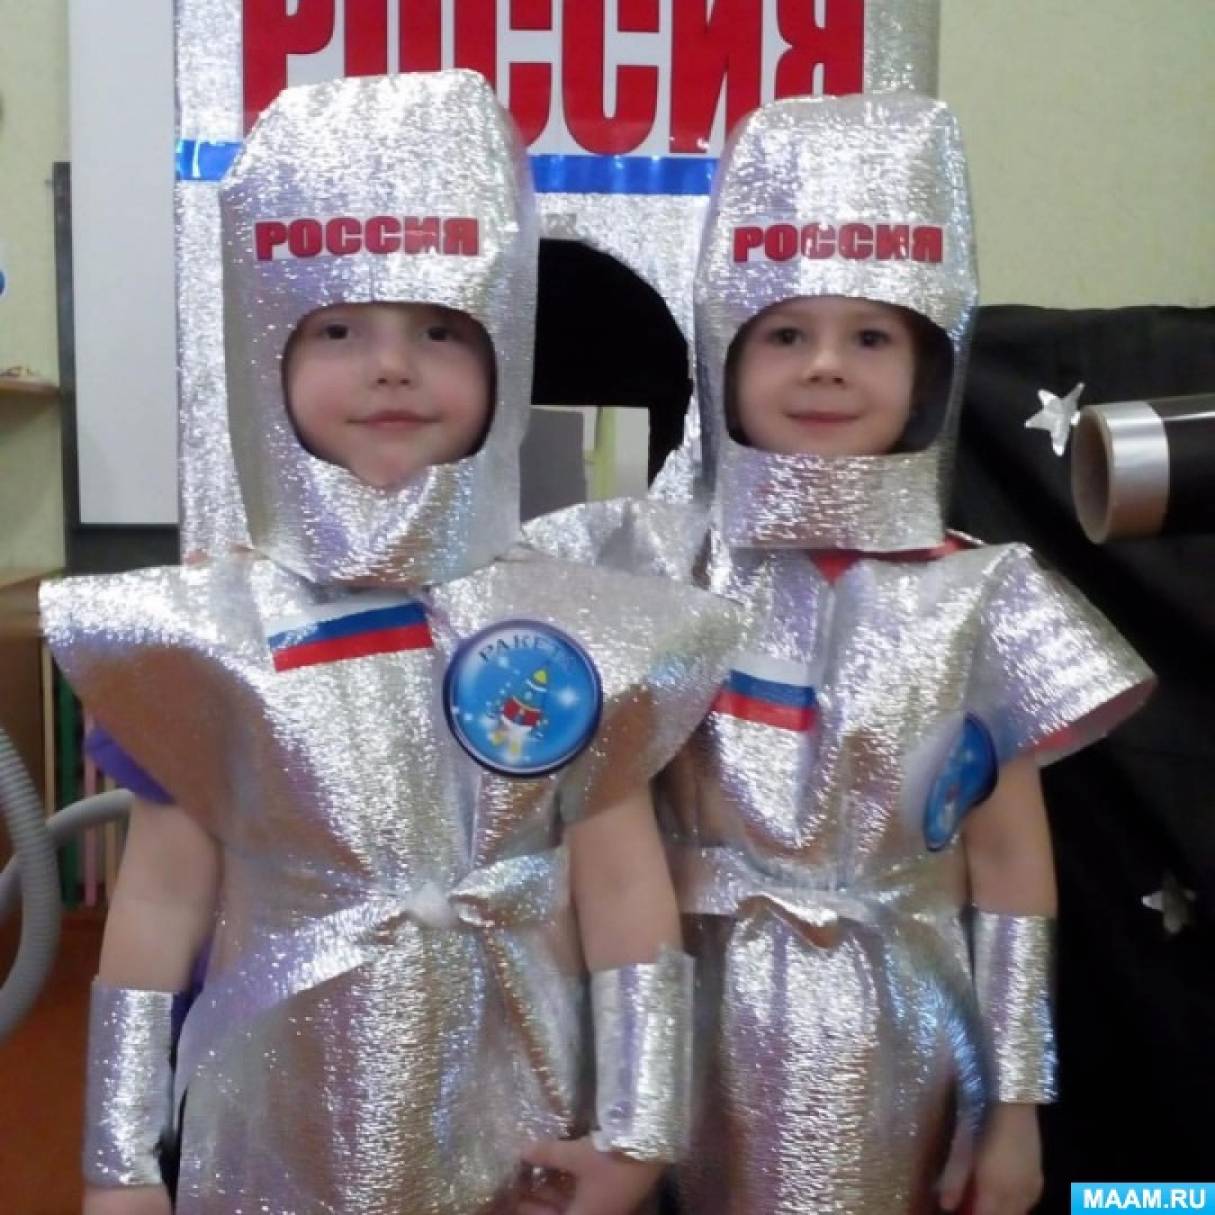 Сценарий развлечения день космонавтики в детском саду. Костюм на день космонавтики. Космический костюм в садик. Костюм ко Дню космонавтики в детский сад. Костюм но день космонавтики для детей.